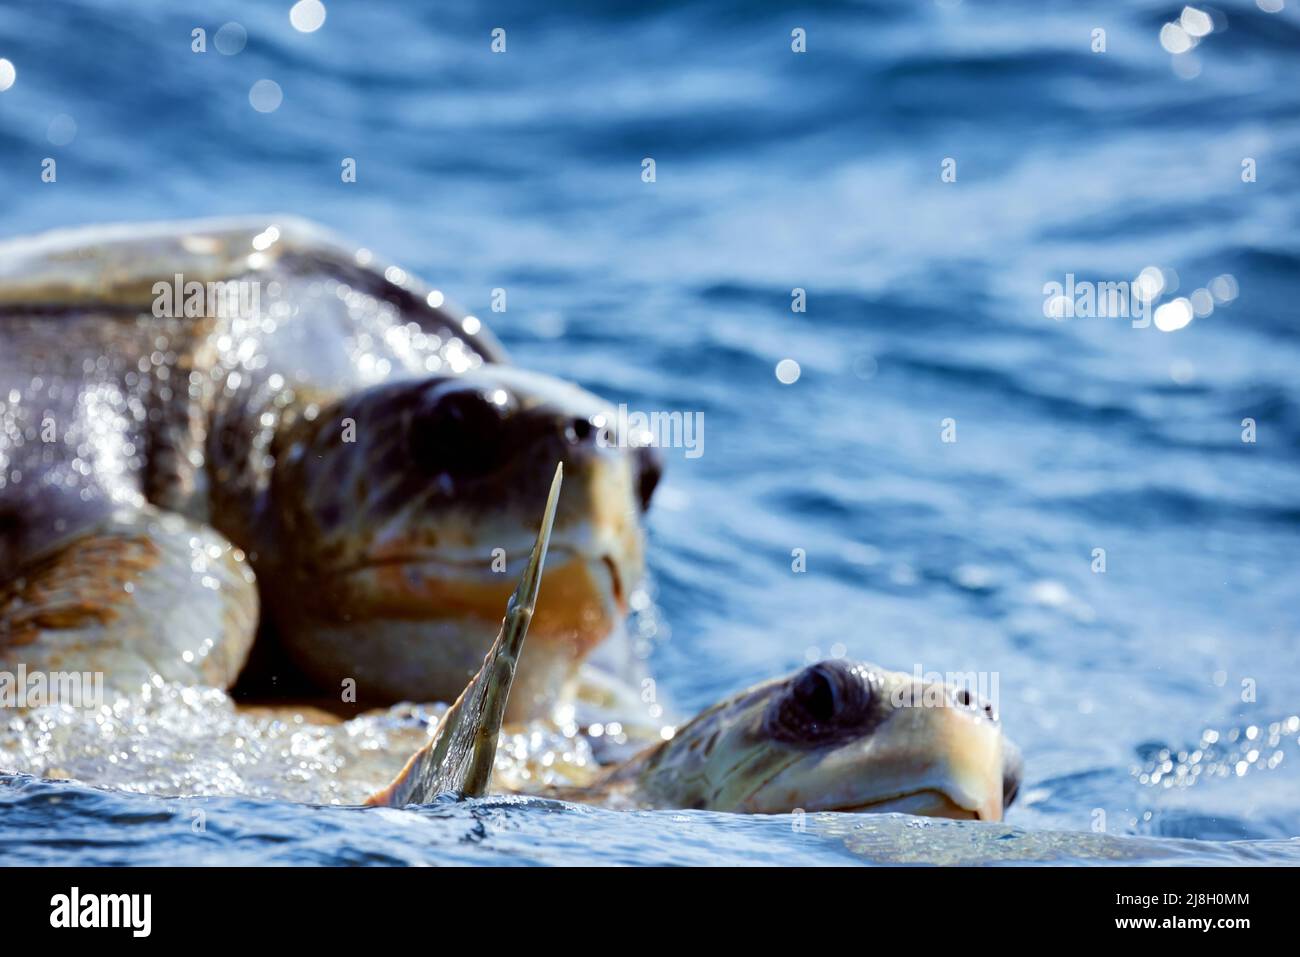 L'accoppiamento delle tartarughe marine nell'oceano aperto. Olive ridley tartarughe marine o Lepidechelys olivacea durante i giochi di accoppiamento. La vita dei rettili marini. Foto Stock